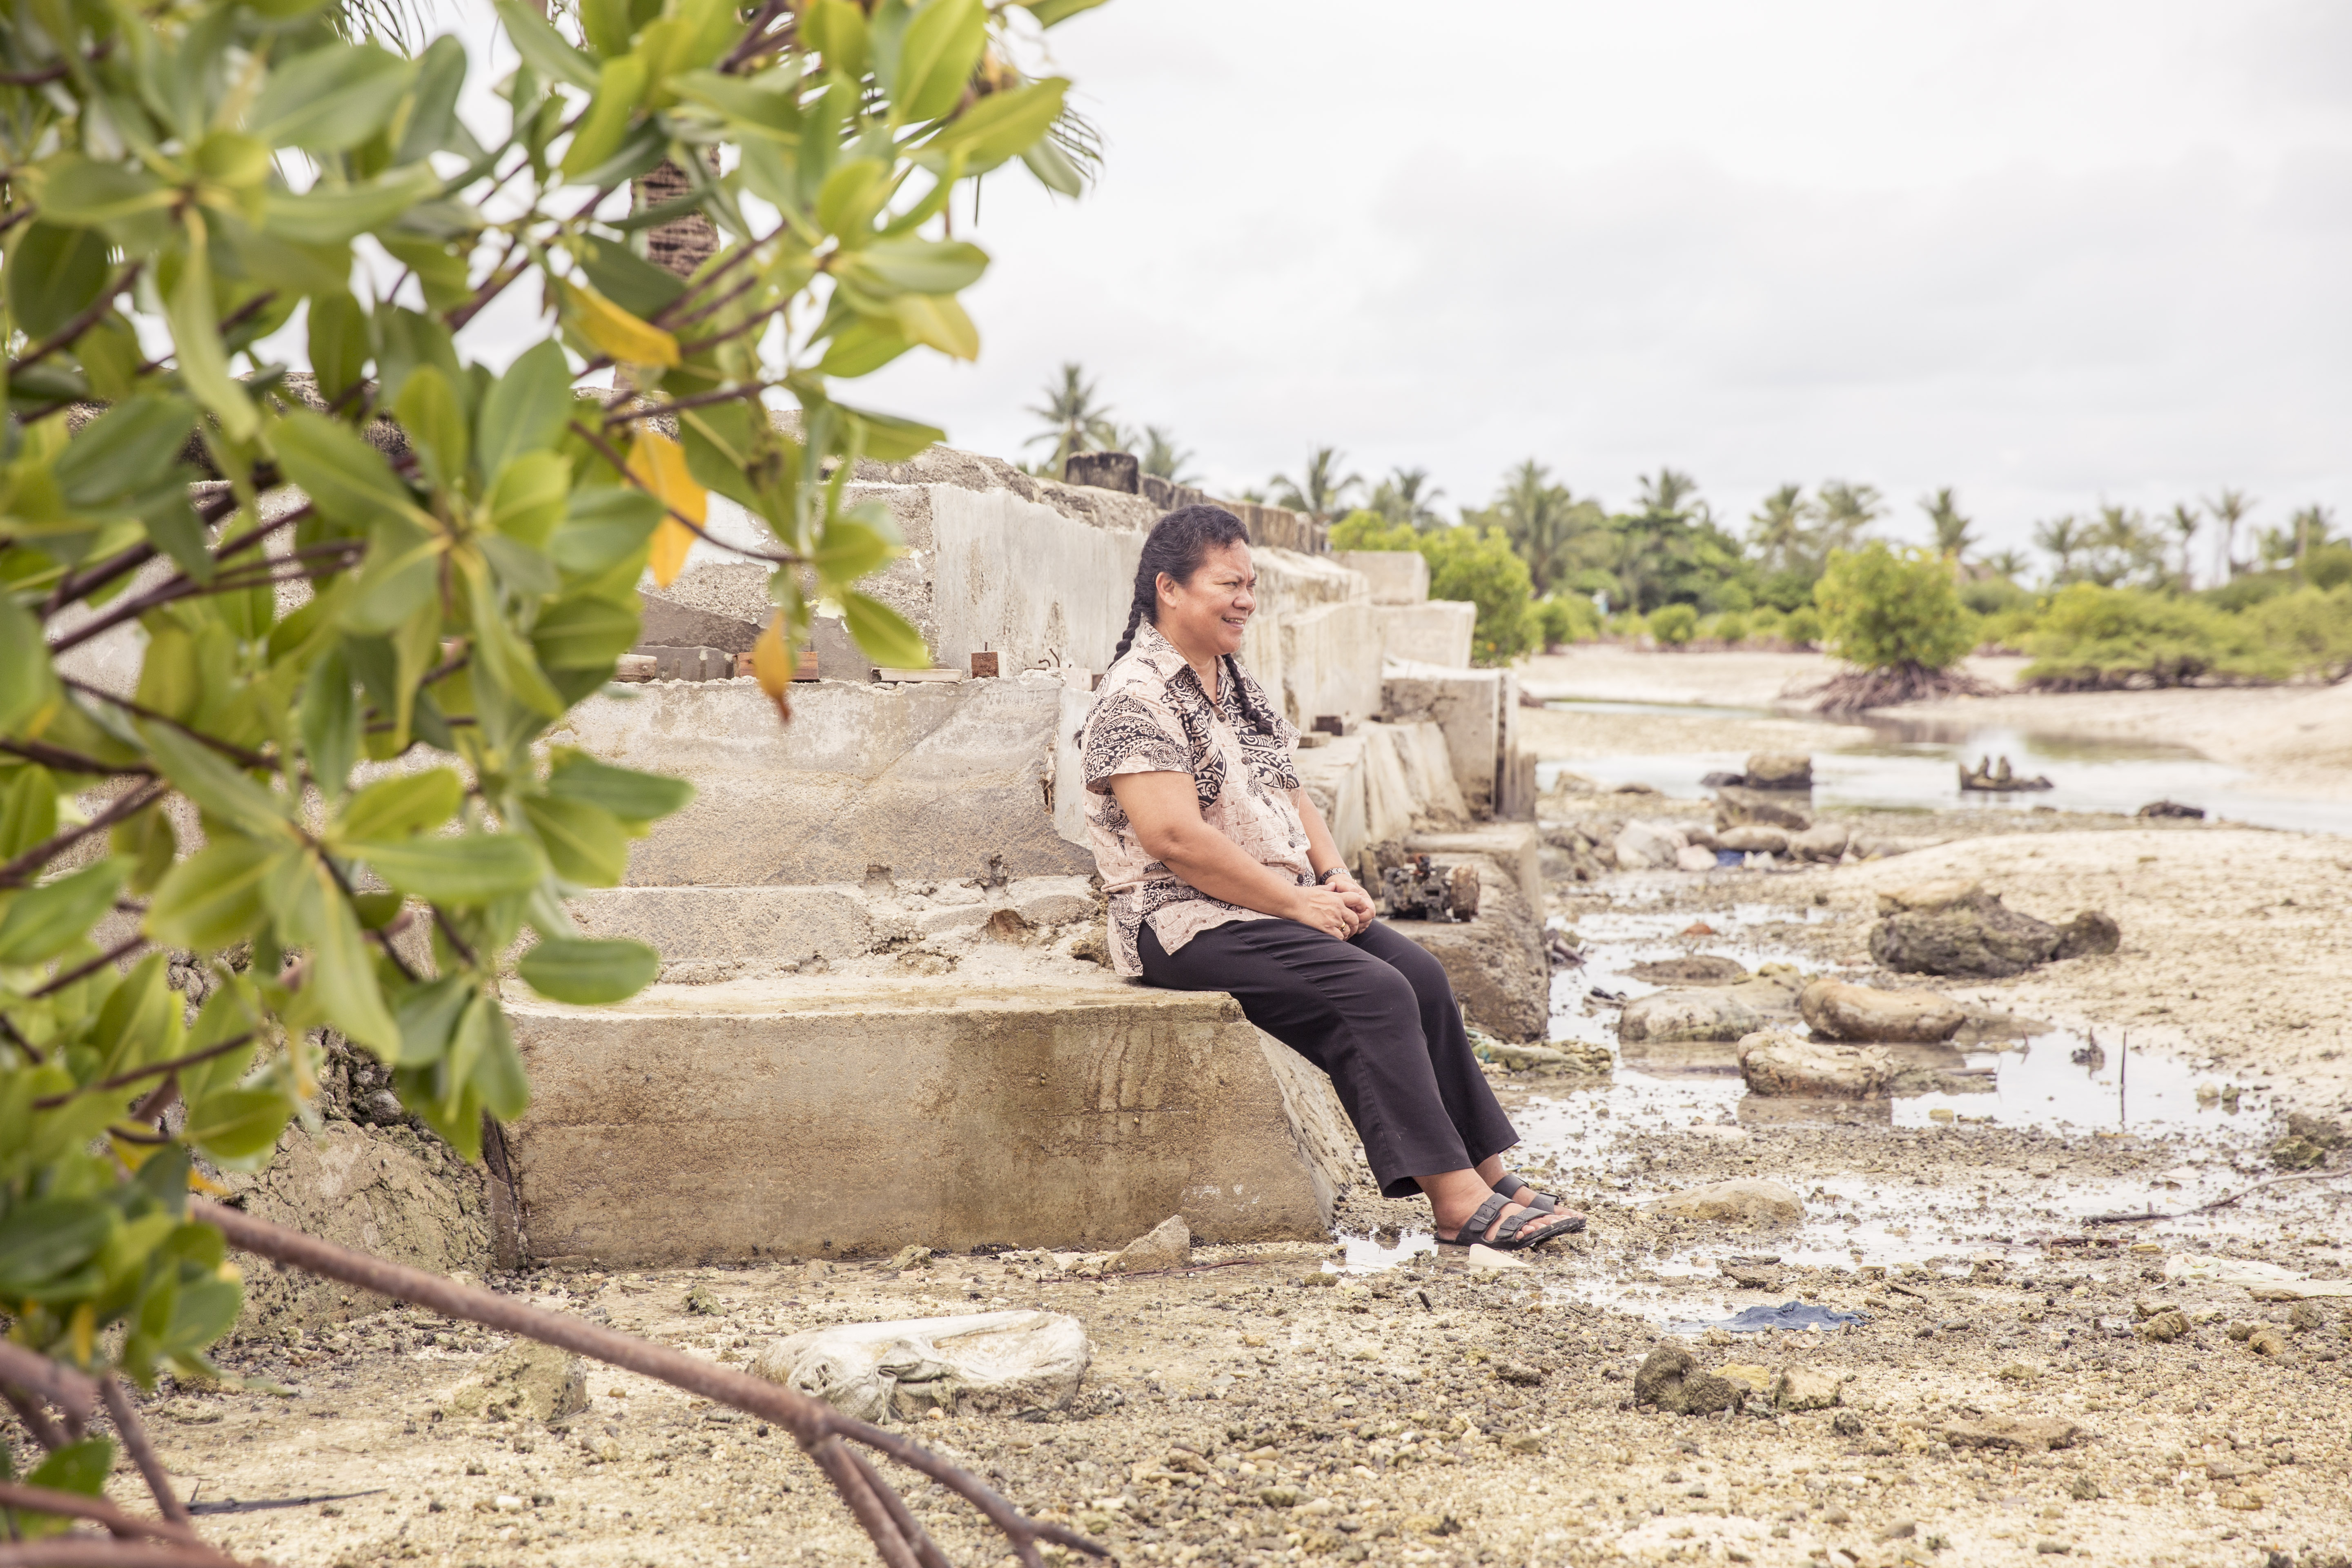 WRD Kiribati's Pelenise and property